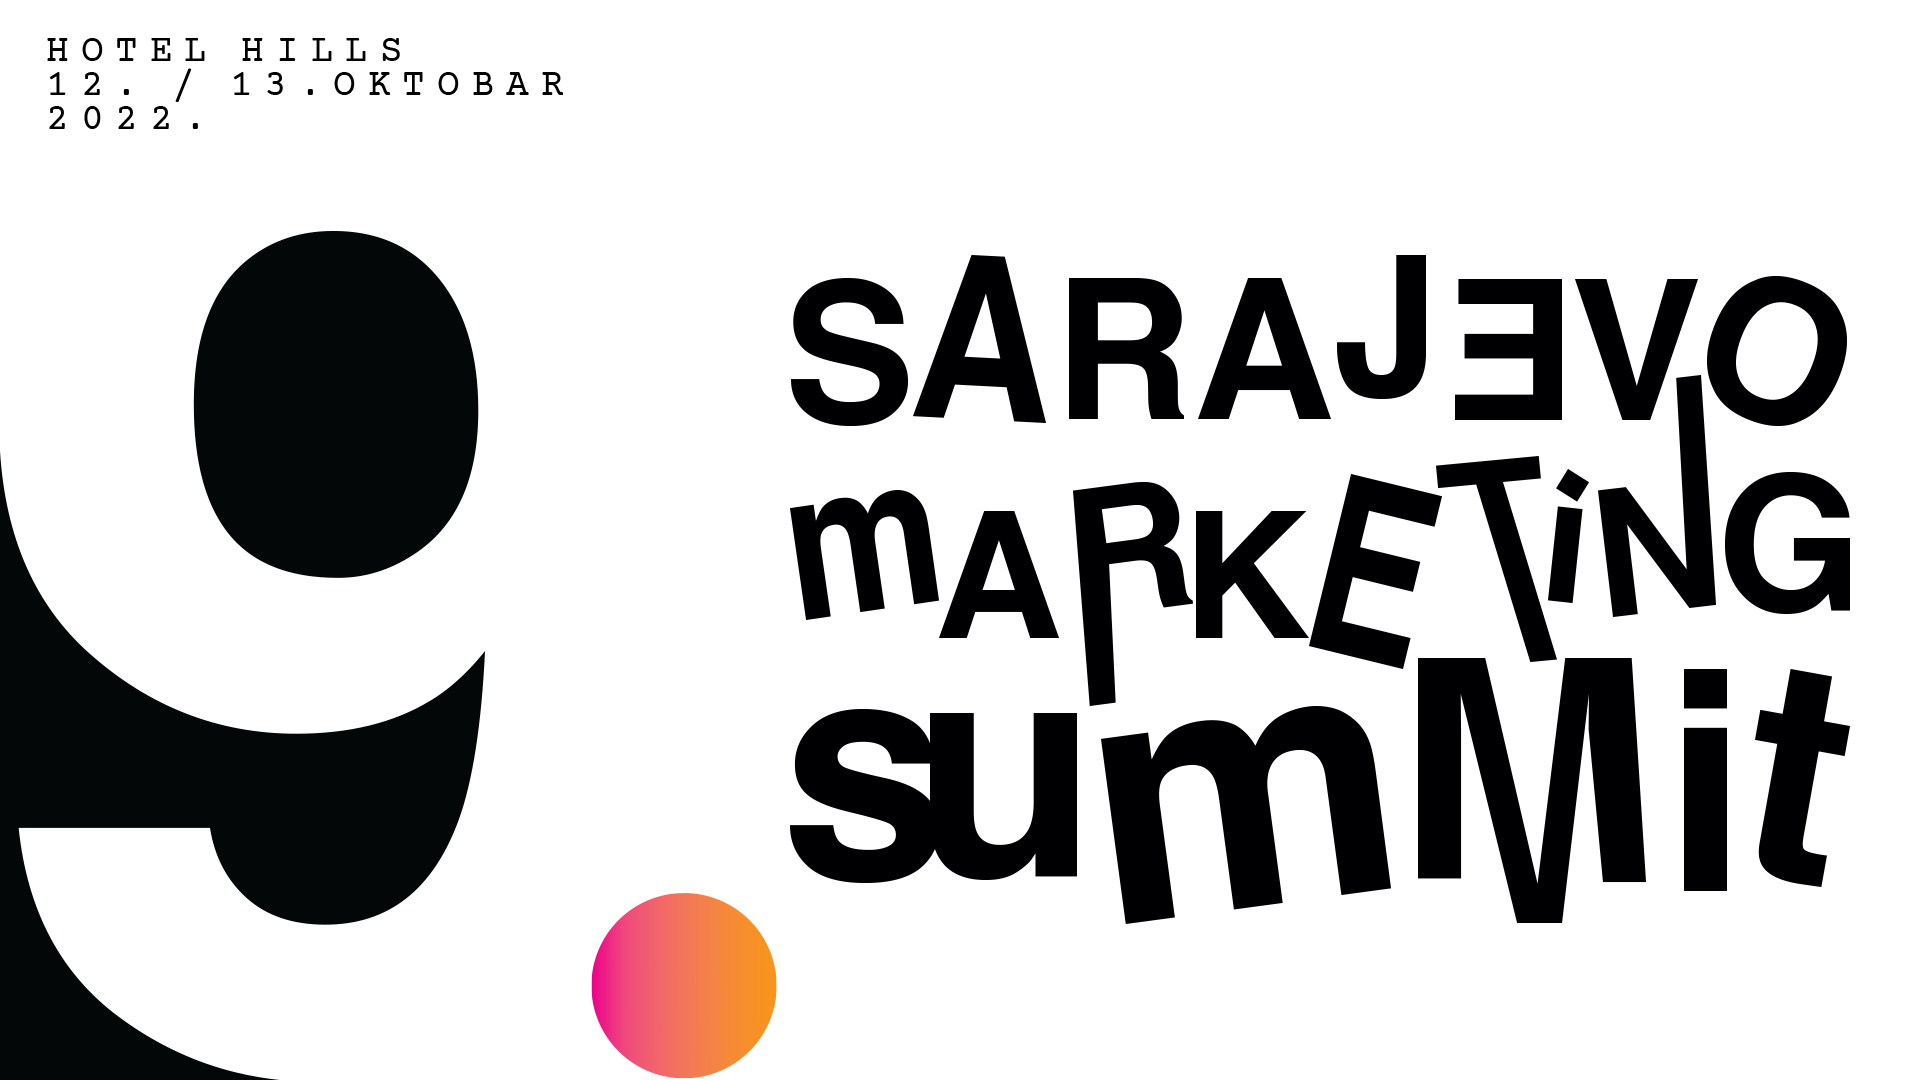 sarajevo marketing summit